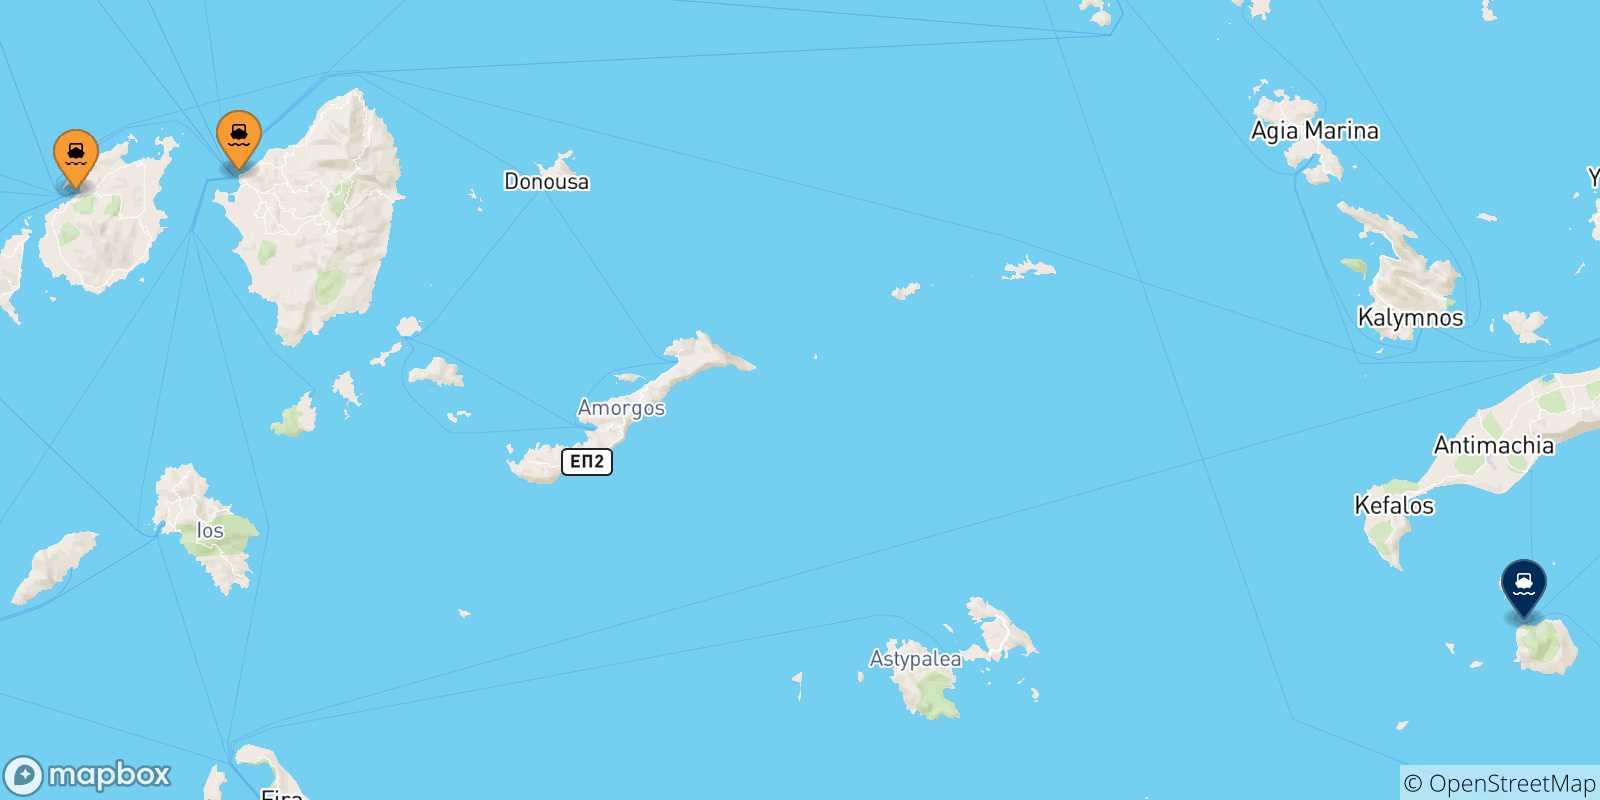 Mappa delle possibili rotte tra le Isole Cicladi e Nisyros